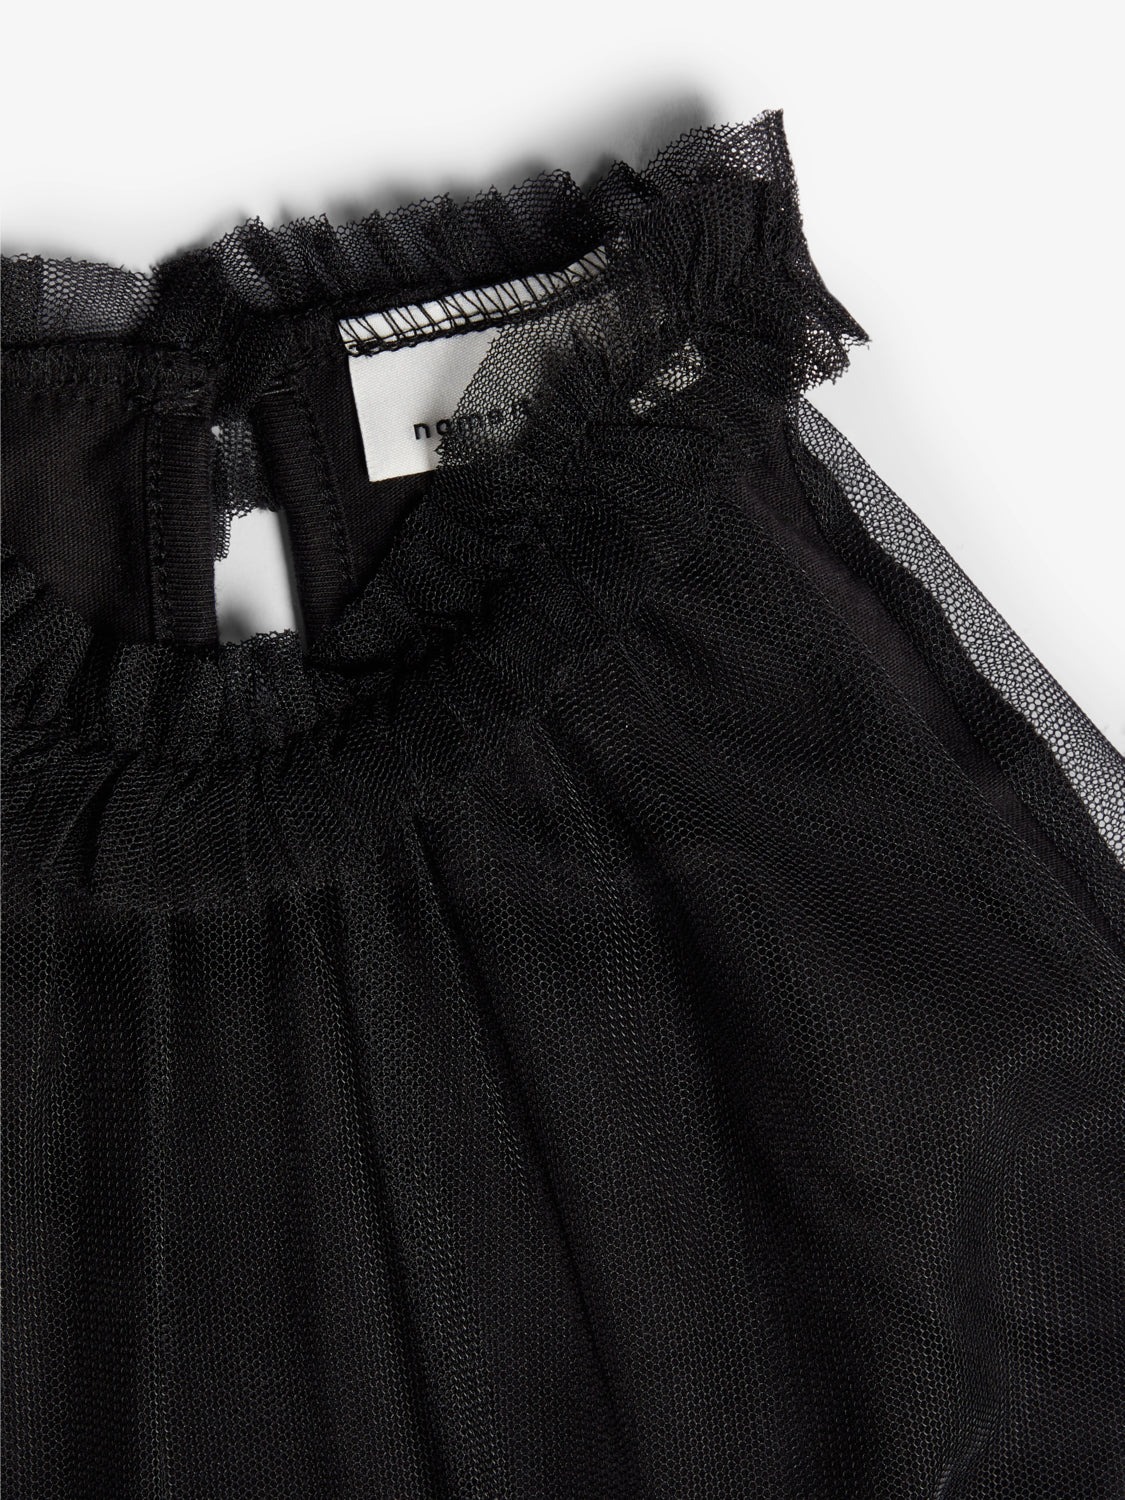 Tyllklänning - svart klänning